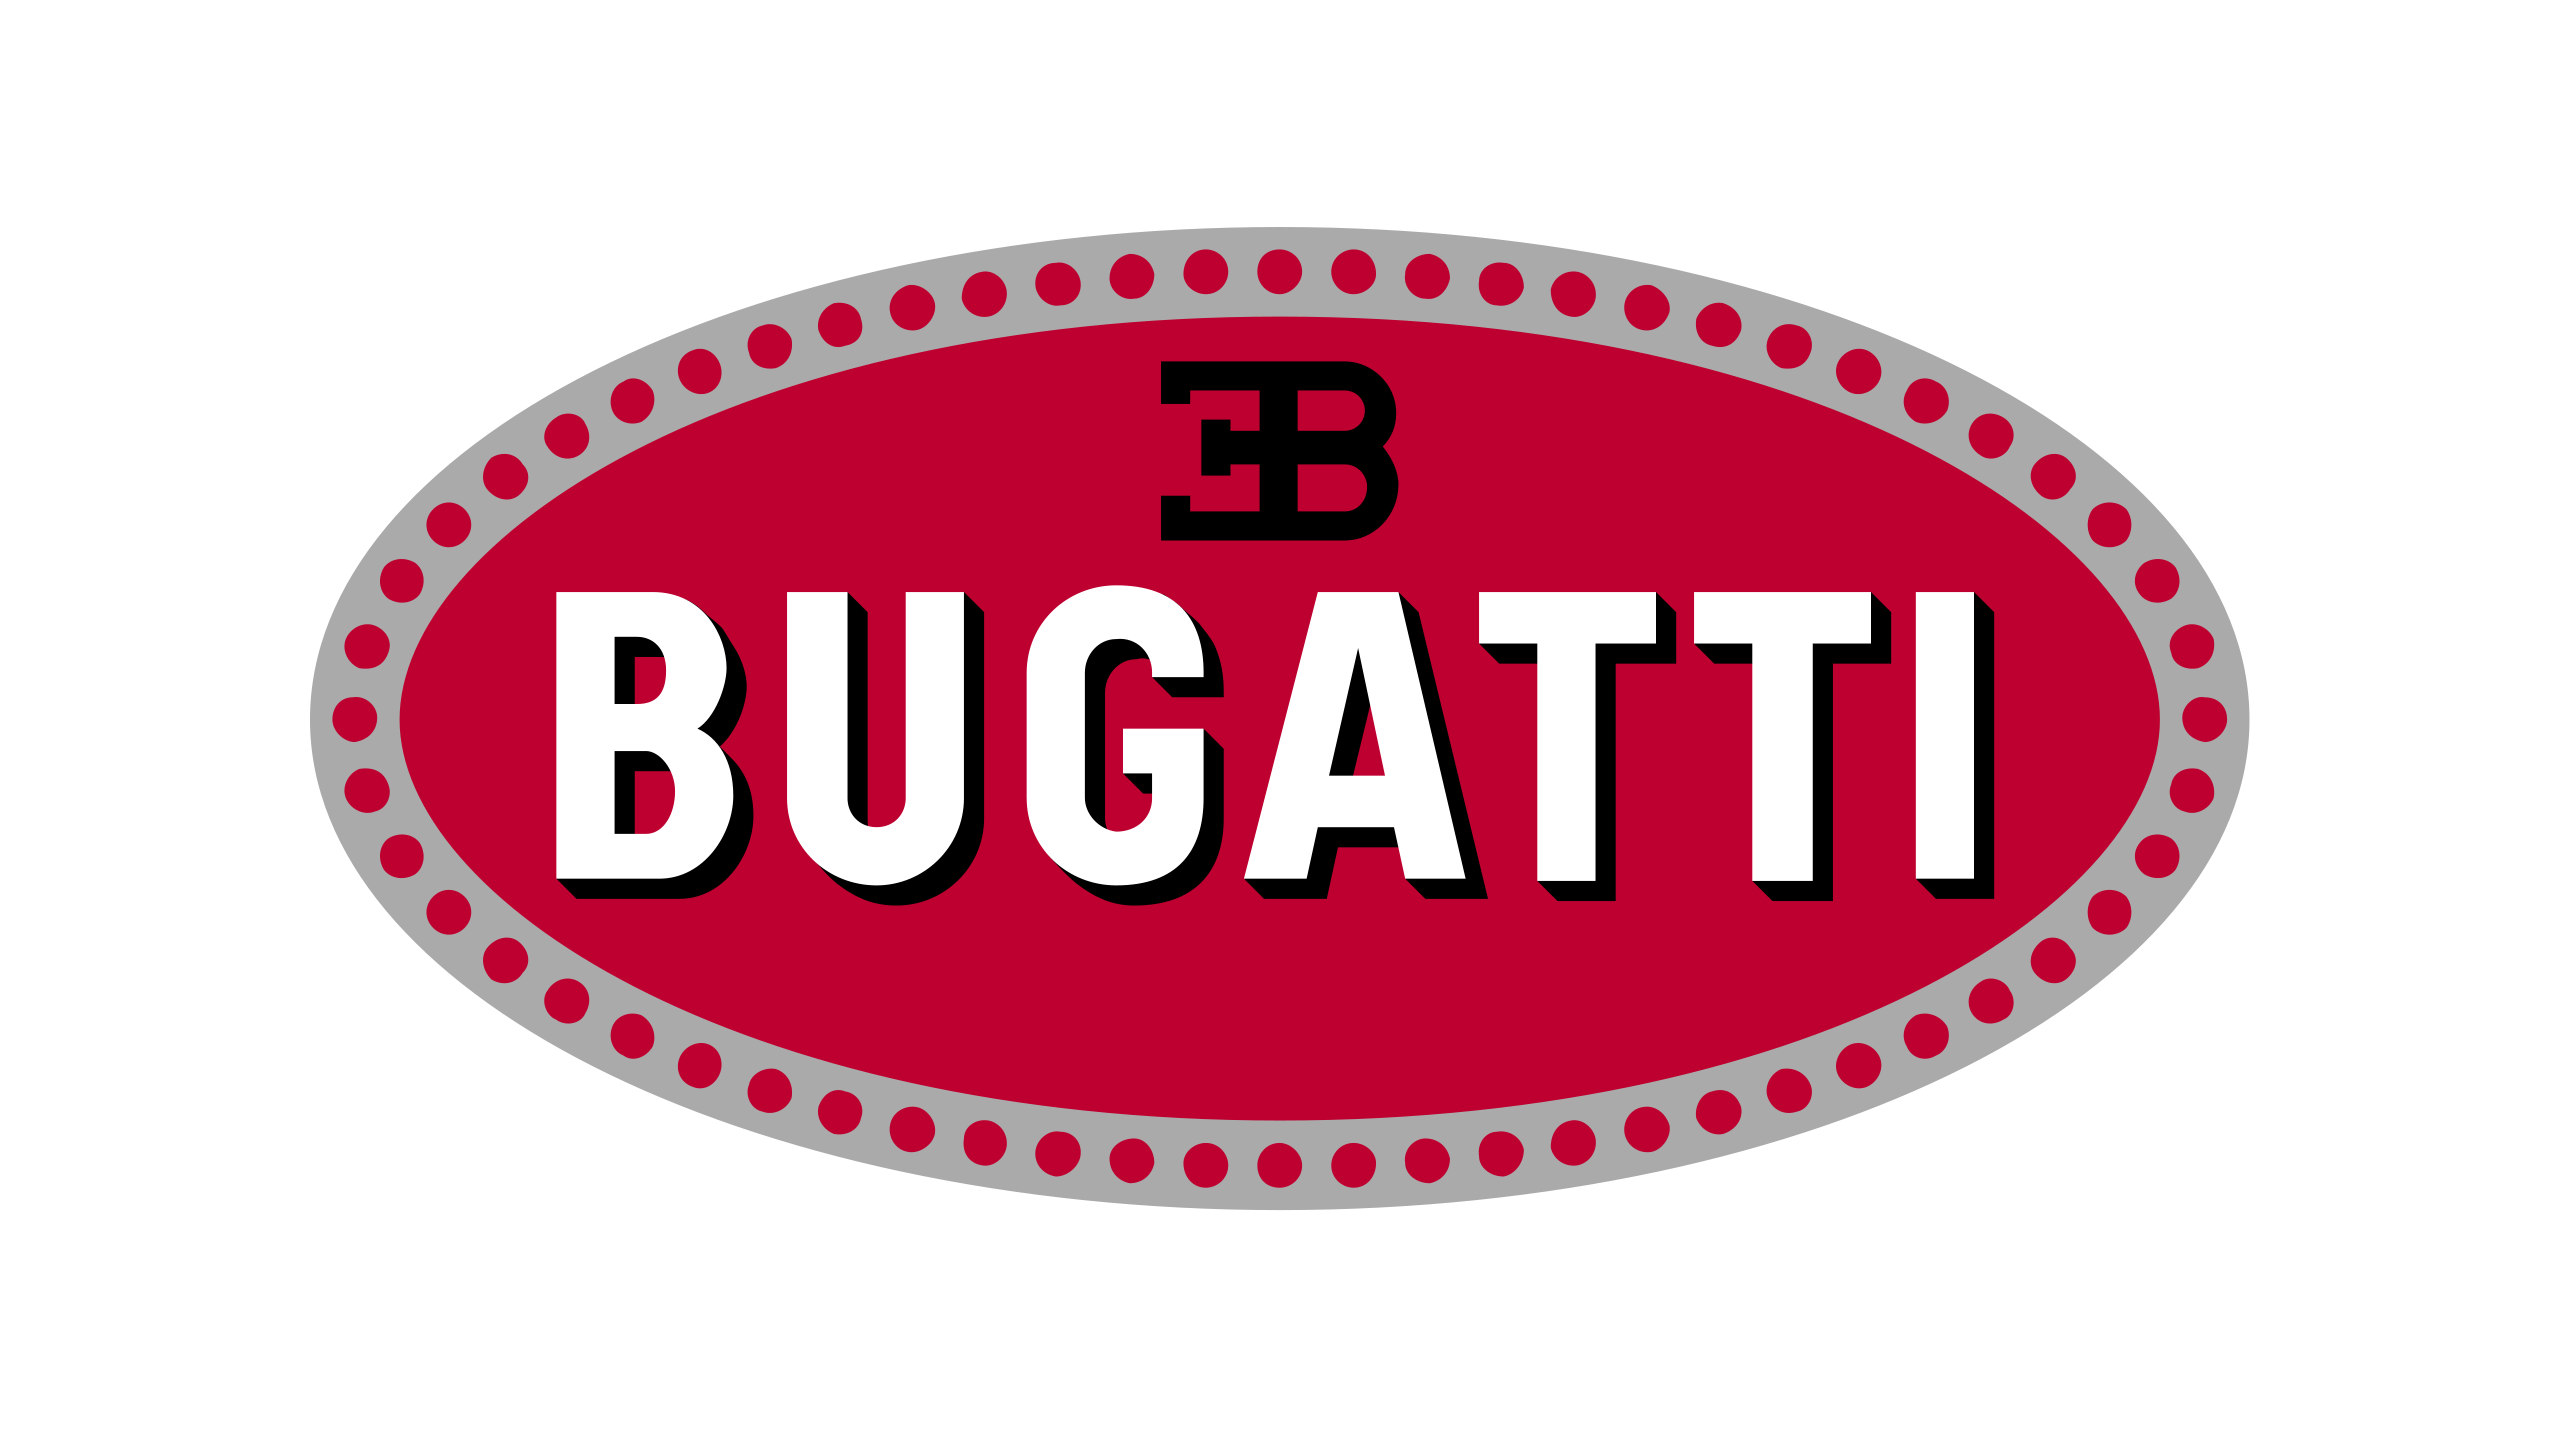 Знак Бугатти. Марка Бугатти. Bugatti Automobiles s.a.s. знак. Логотип марки Бугатти. Бренд bugatti